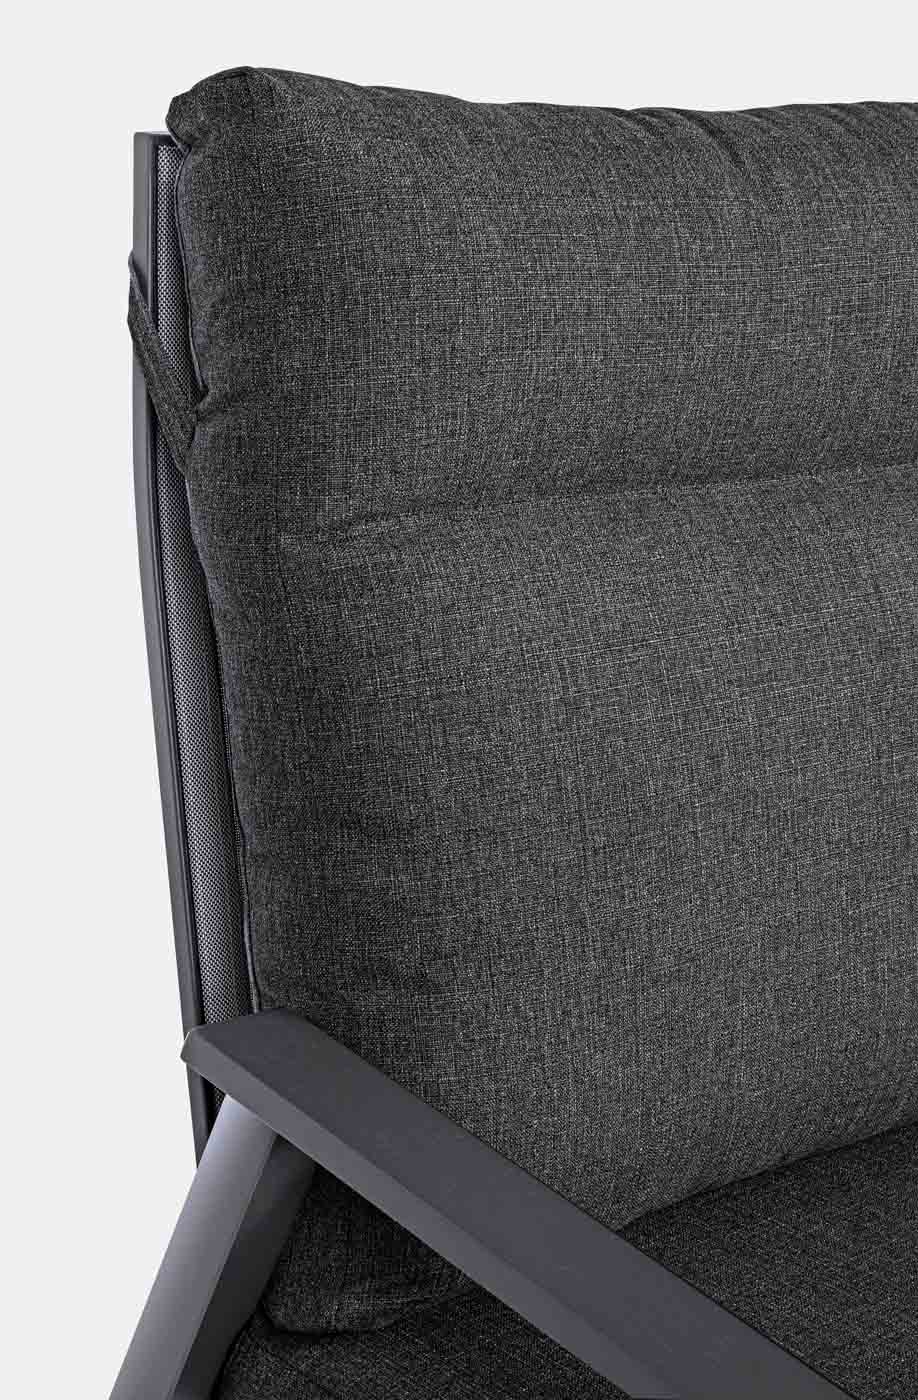 Unser 2,5 Sitzer Sofa Kledi hat verstellbare Rückenlehnen, die für den nötigen Komfort sorgen